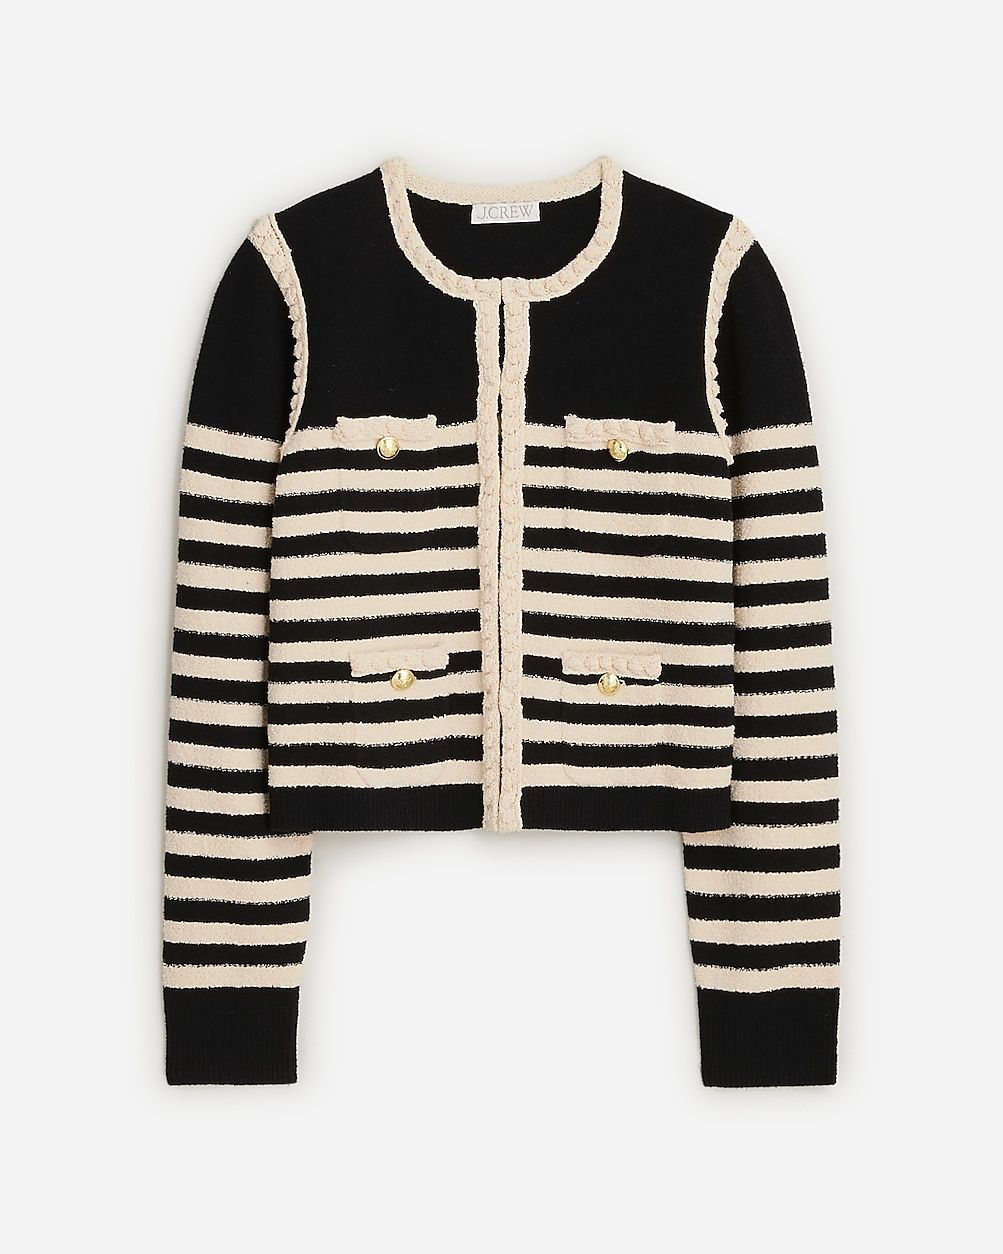 Odette sweater lady jacket in striped boucl&eacute; | J.Crew US